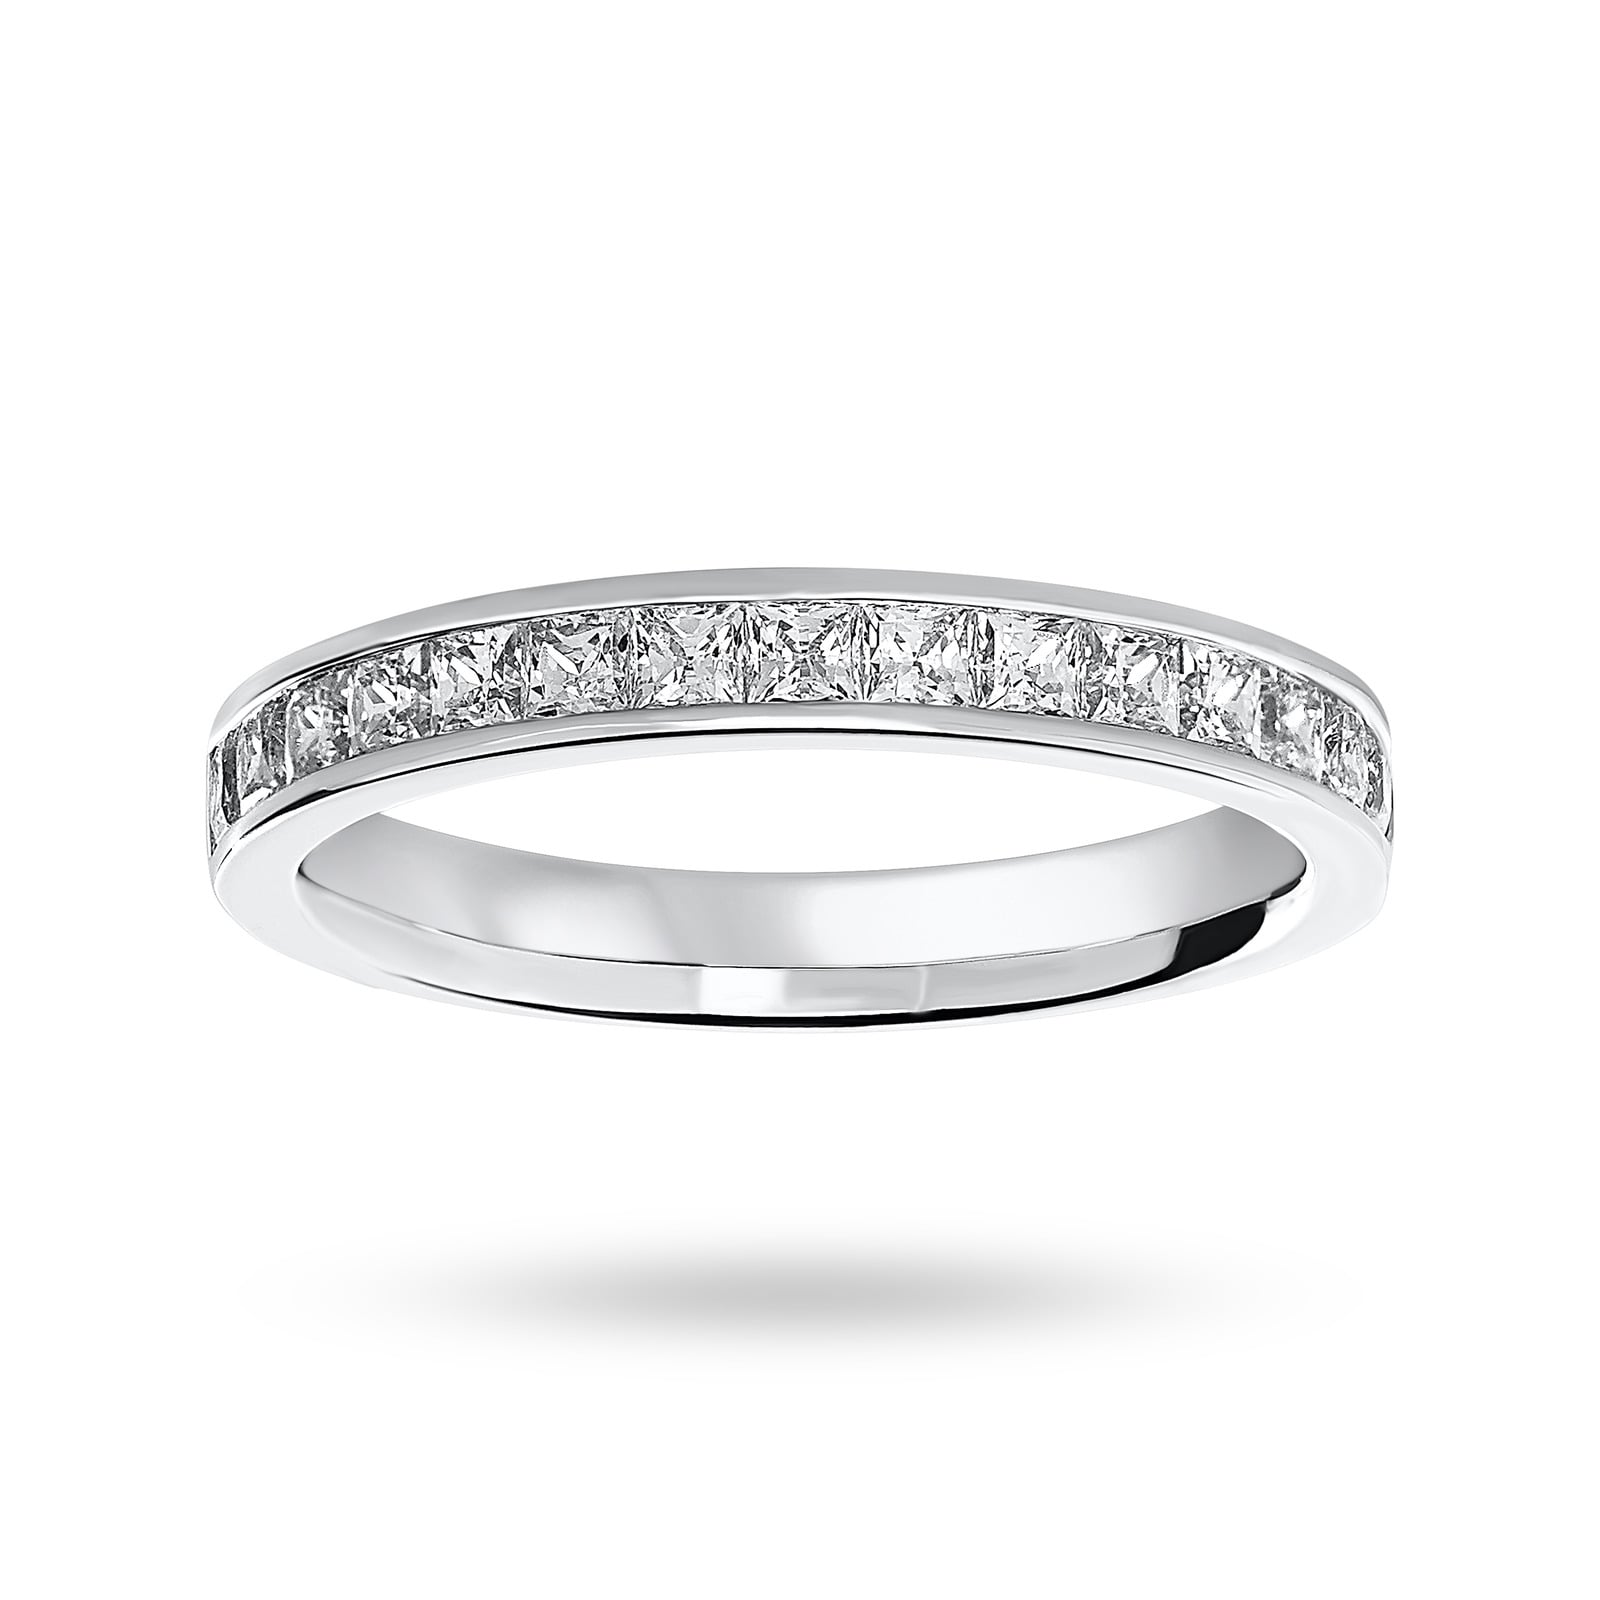 18 Carat White Gold 0.75 Carat Princess Cut Half Eternity Ring - Ring Size K